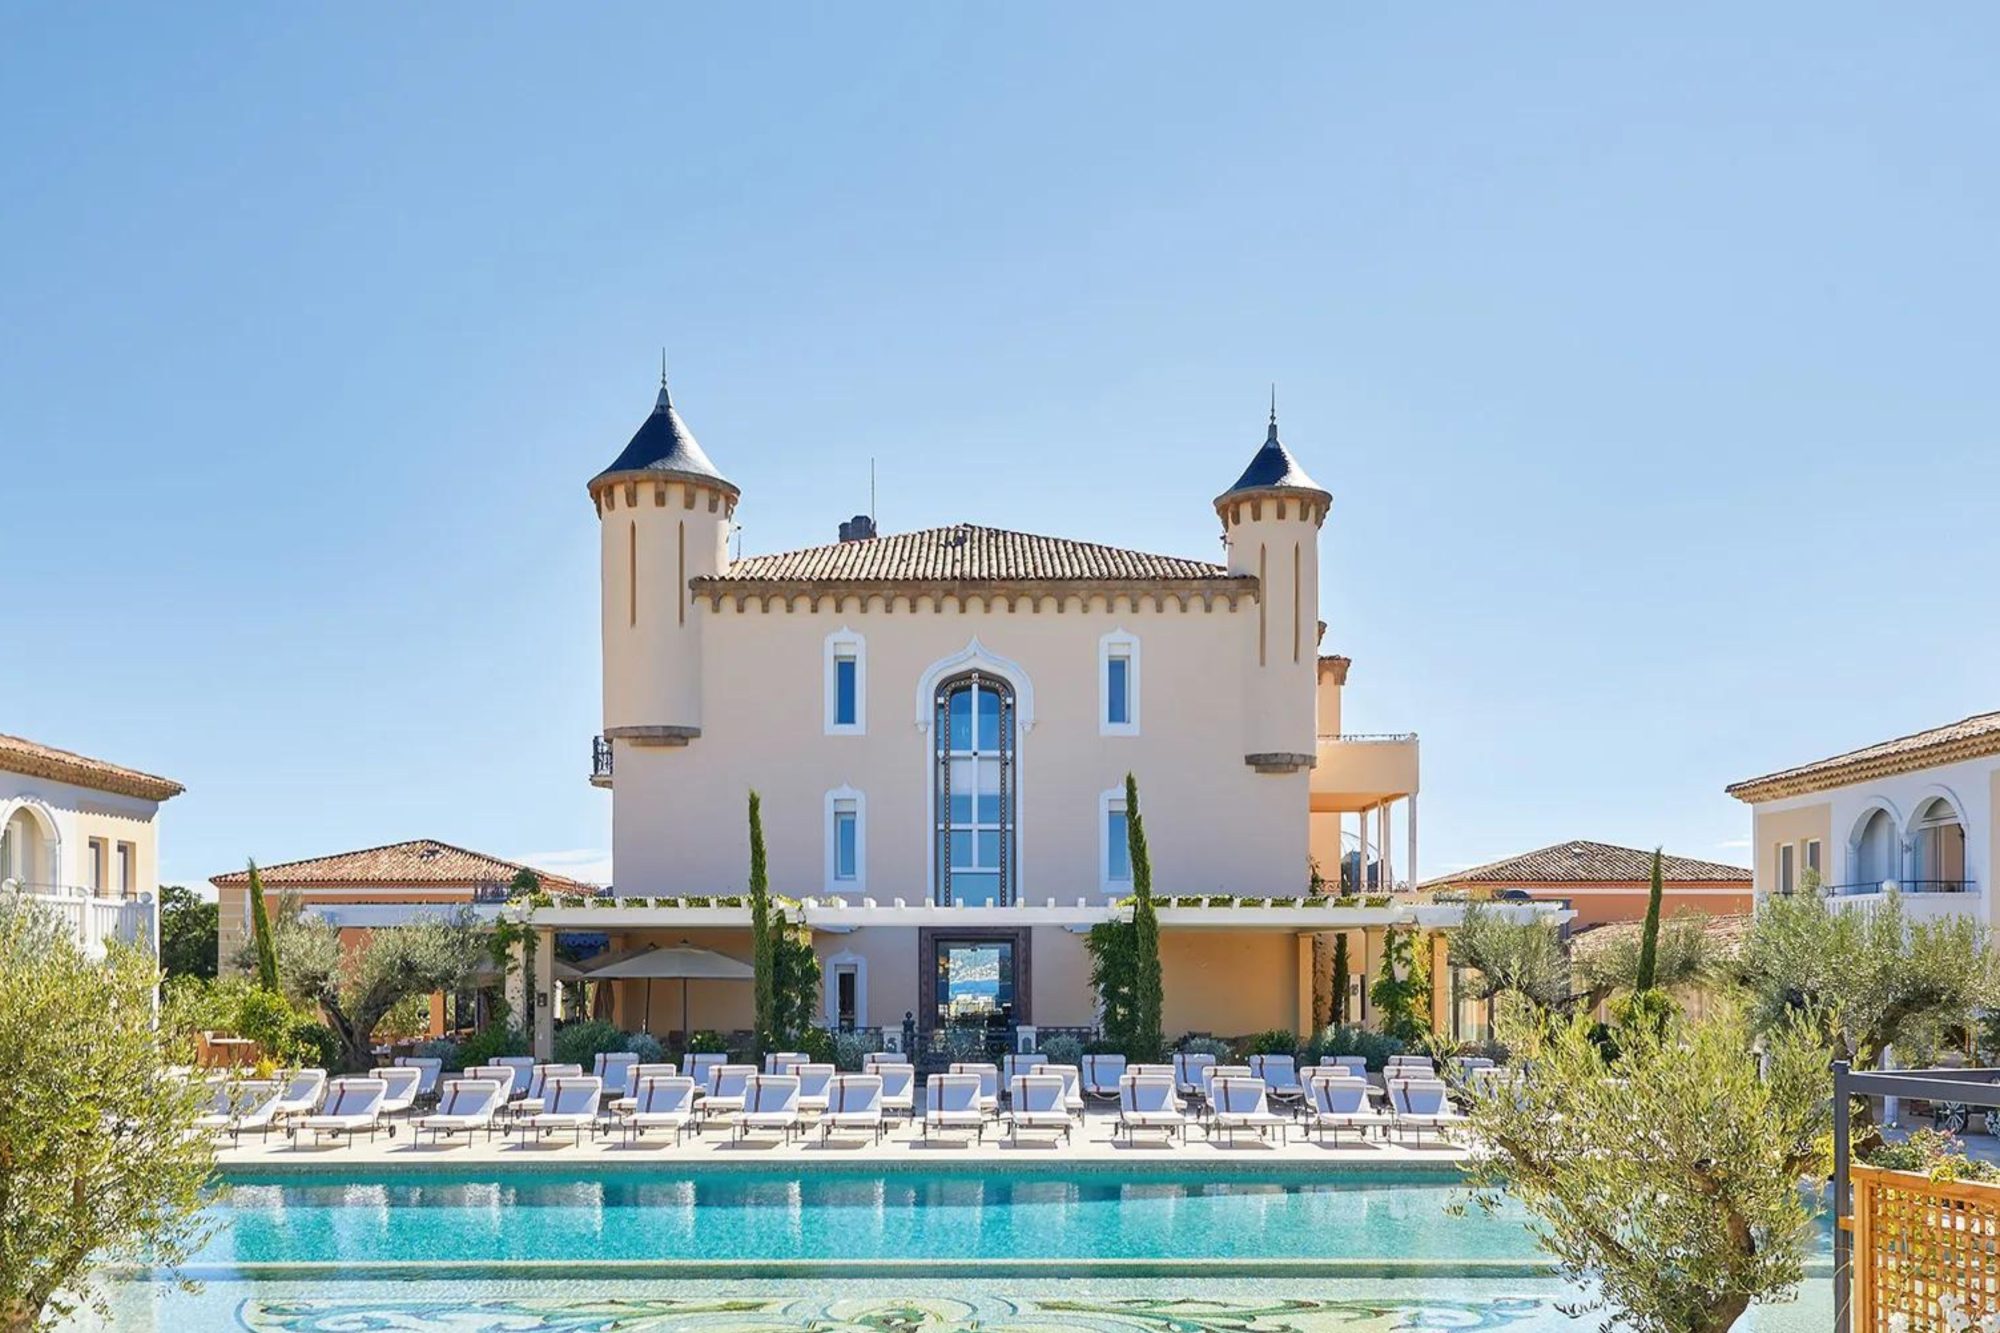 Airelles St-Tropez Château de la Messardière: A Pinnacle of Luxury in St. Tropez